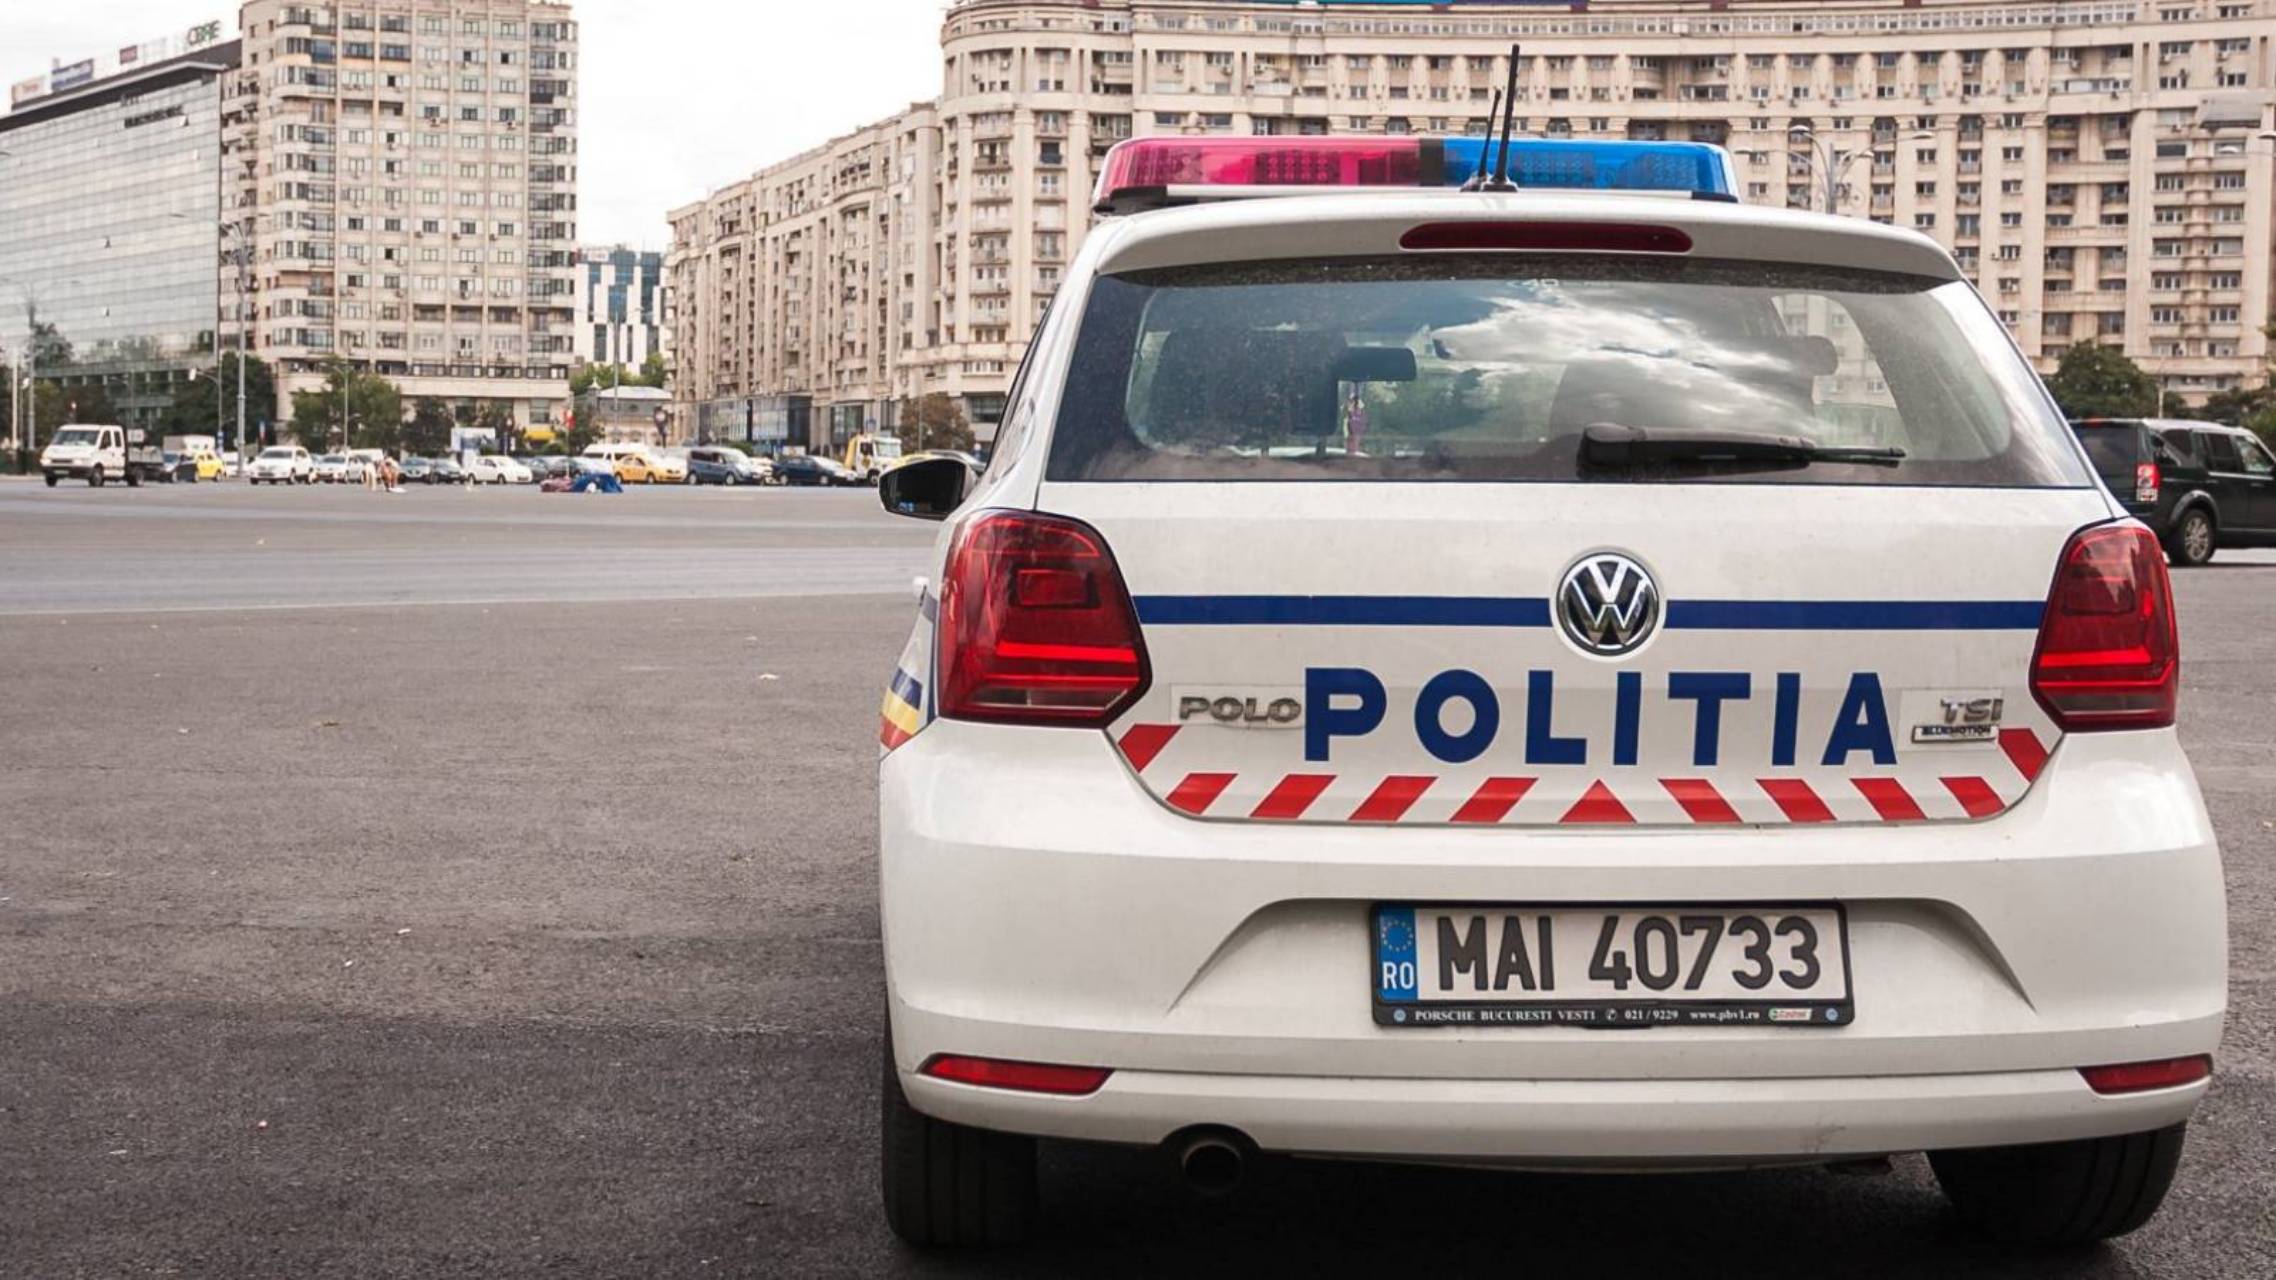 Romanian poliisi noudattaa koronavirustoimenpiteitä